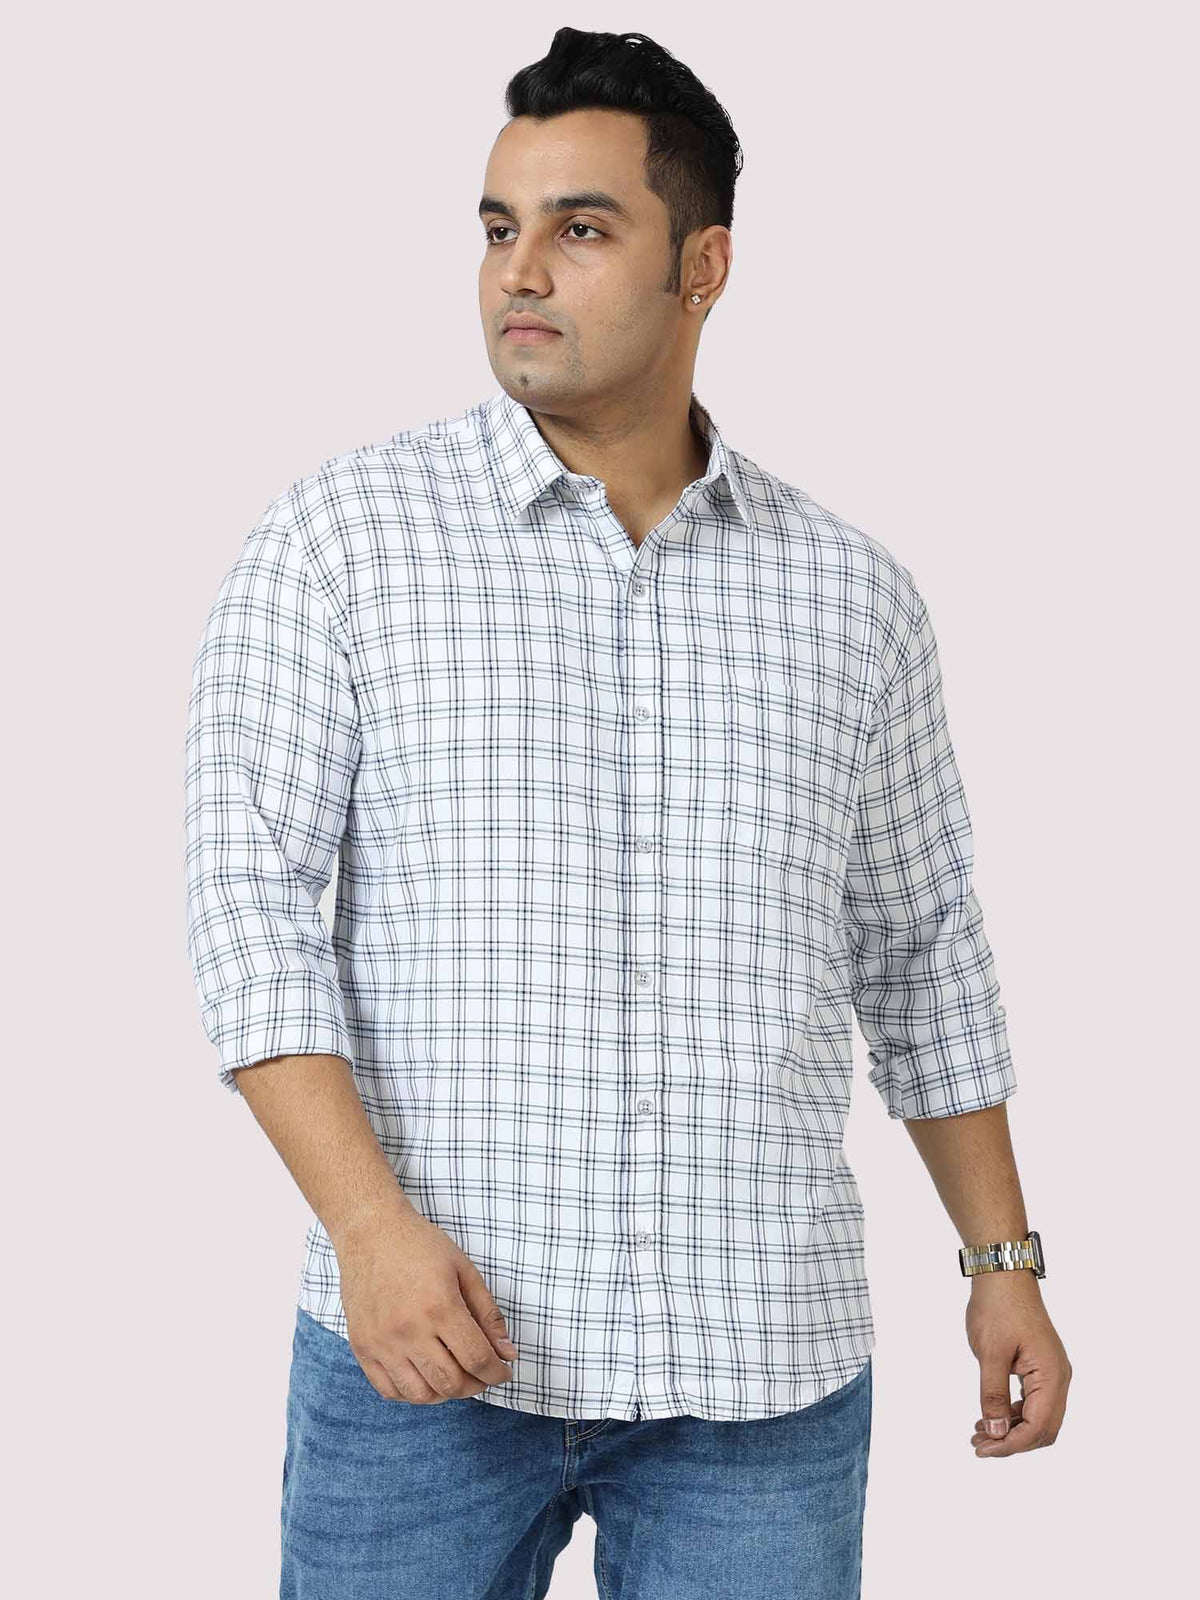 White on Black Checkered Cotton Shirt Men's Plus Size - Guniaa Fashions